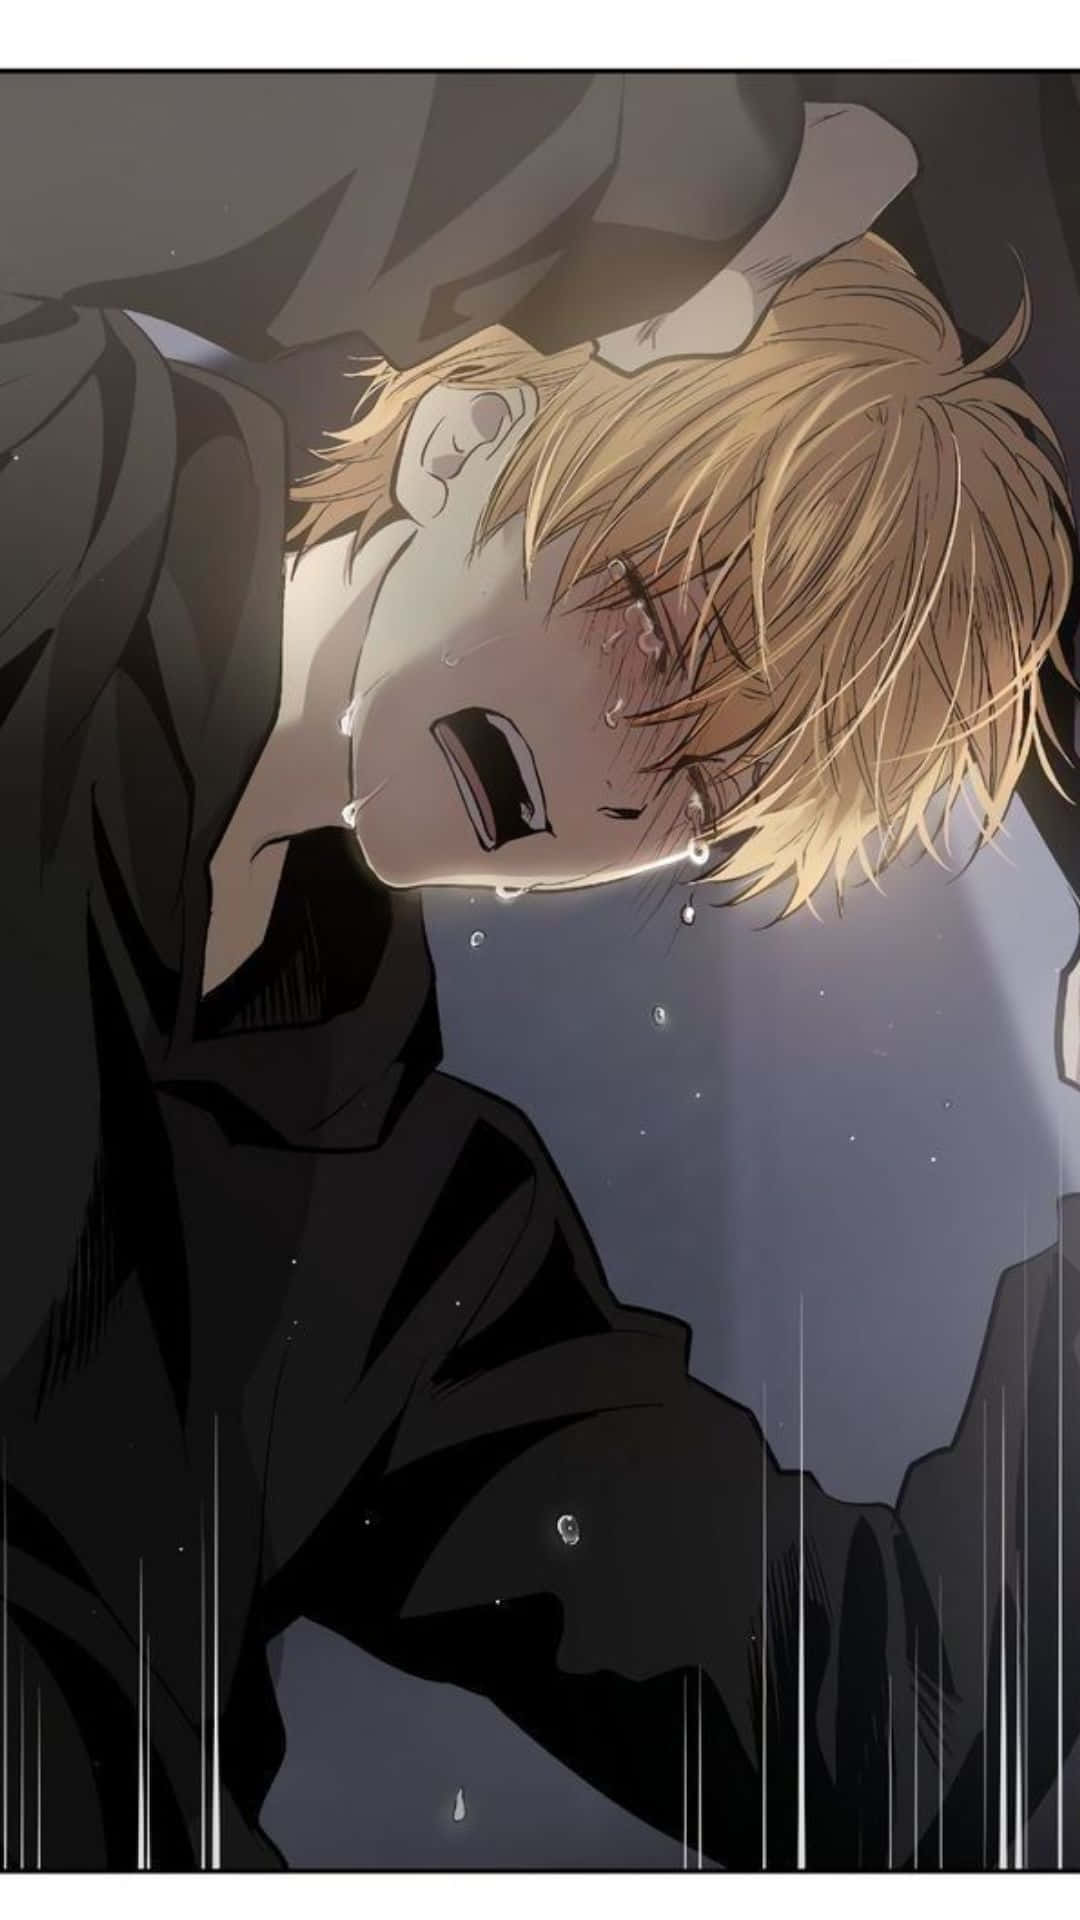 En trist grædende anime pige, omsluttet af fortvivlelse. Wallpaper